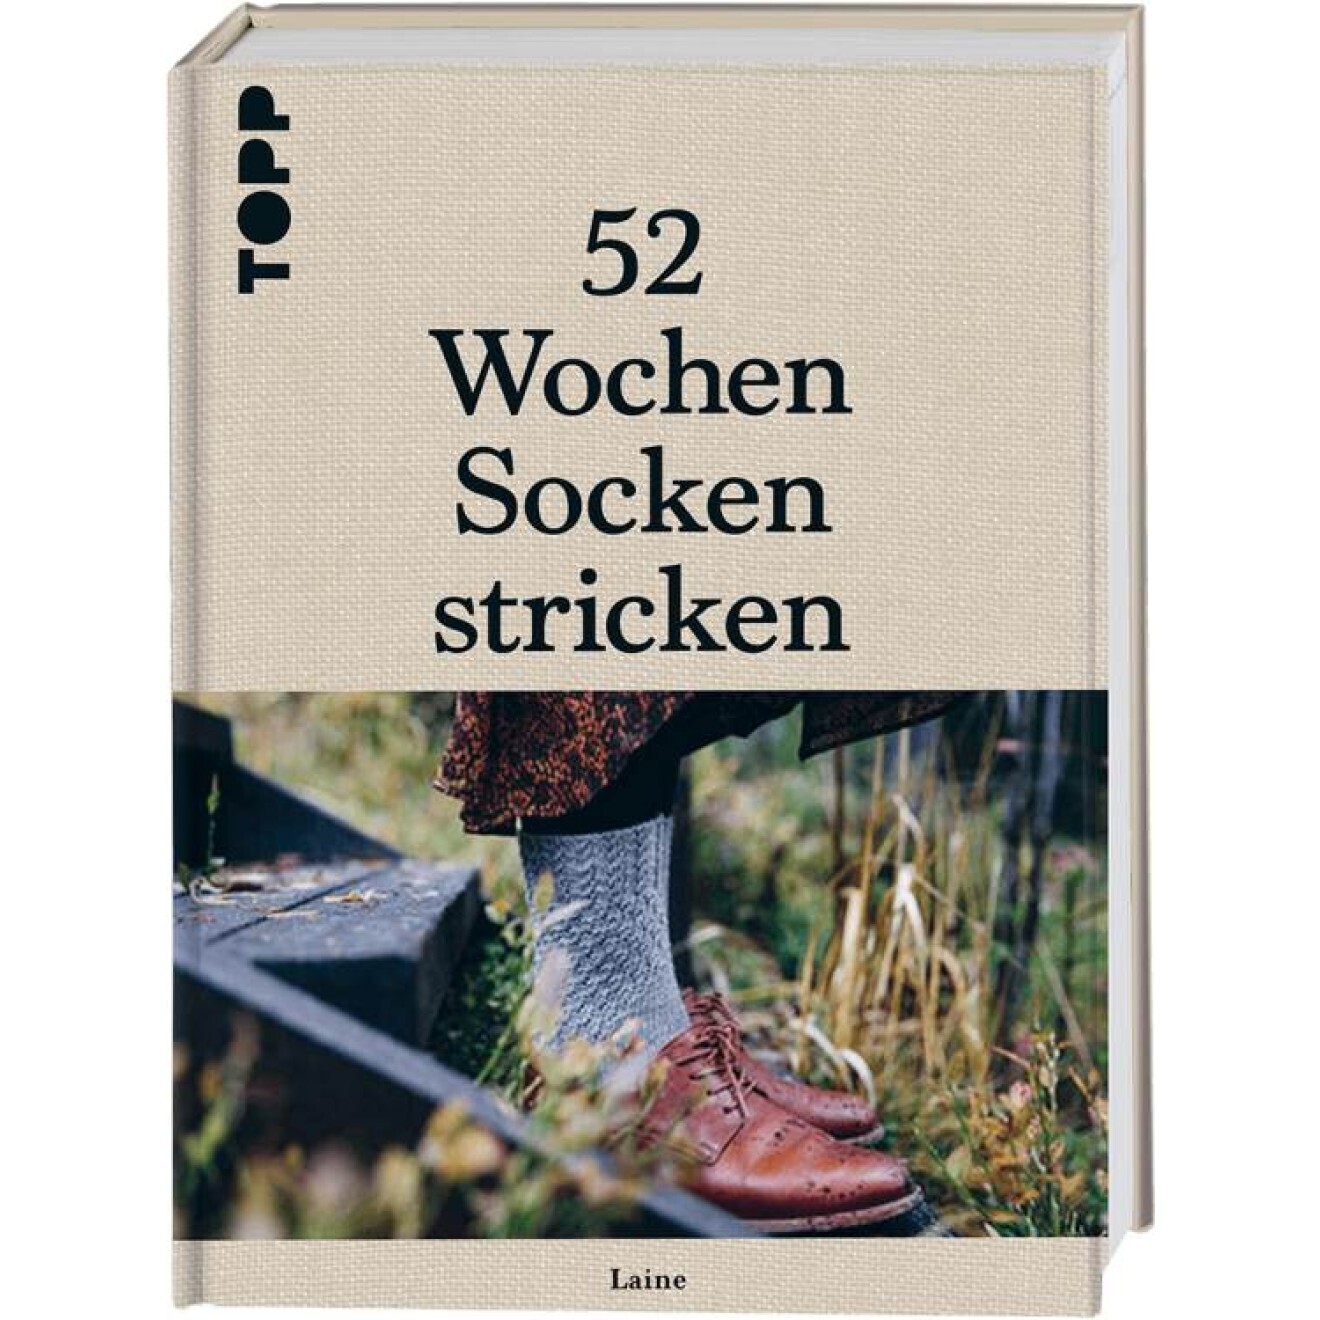 52 Wochen Socken stricken - Laine